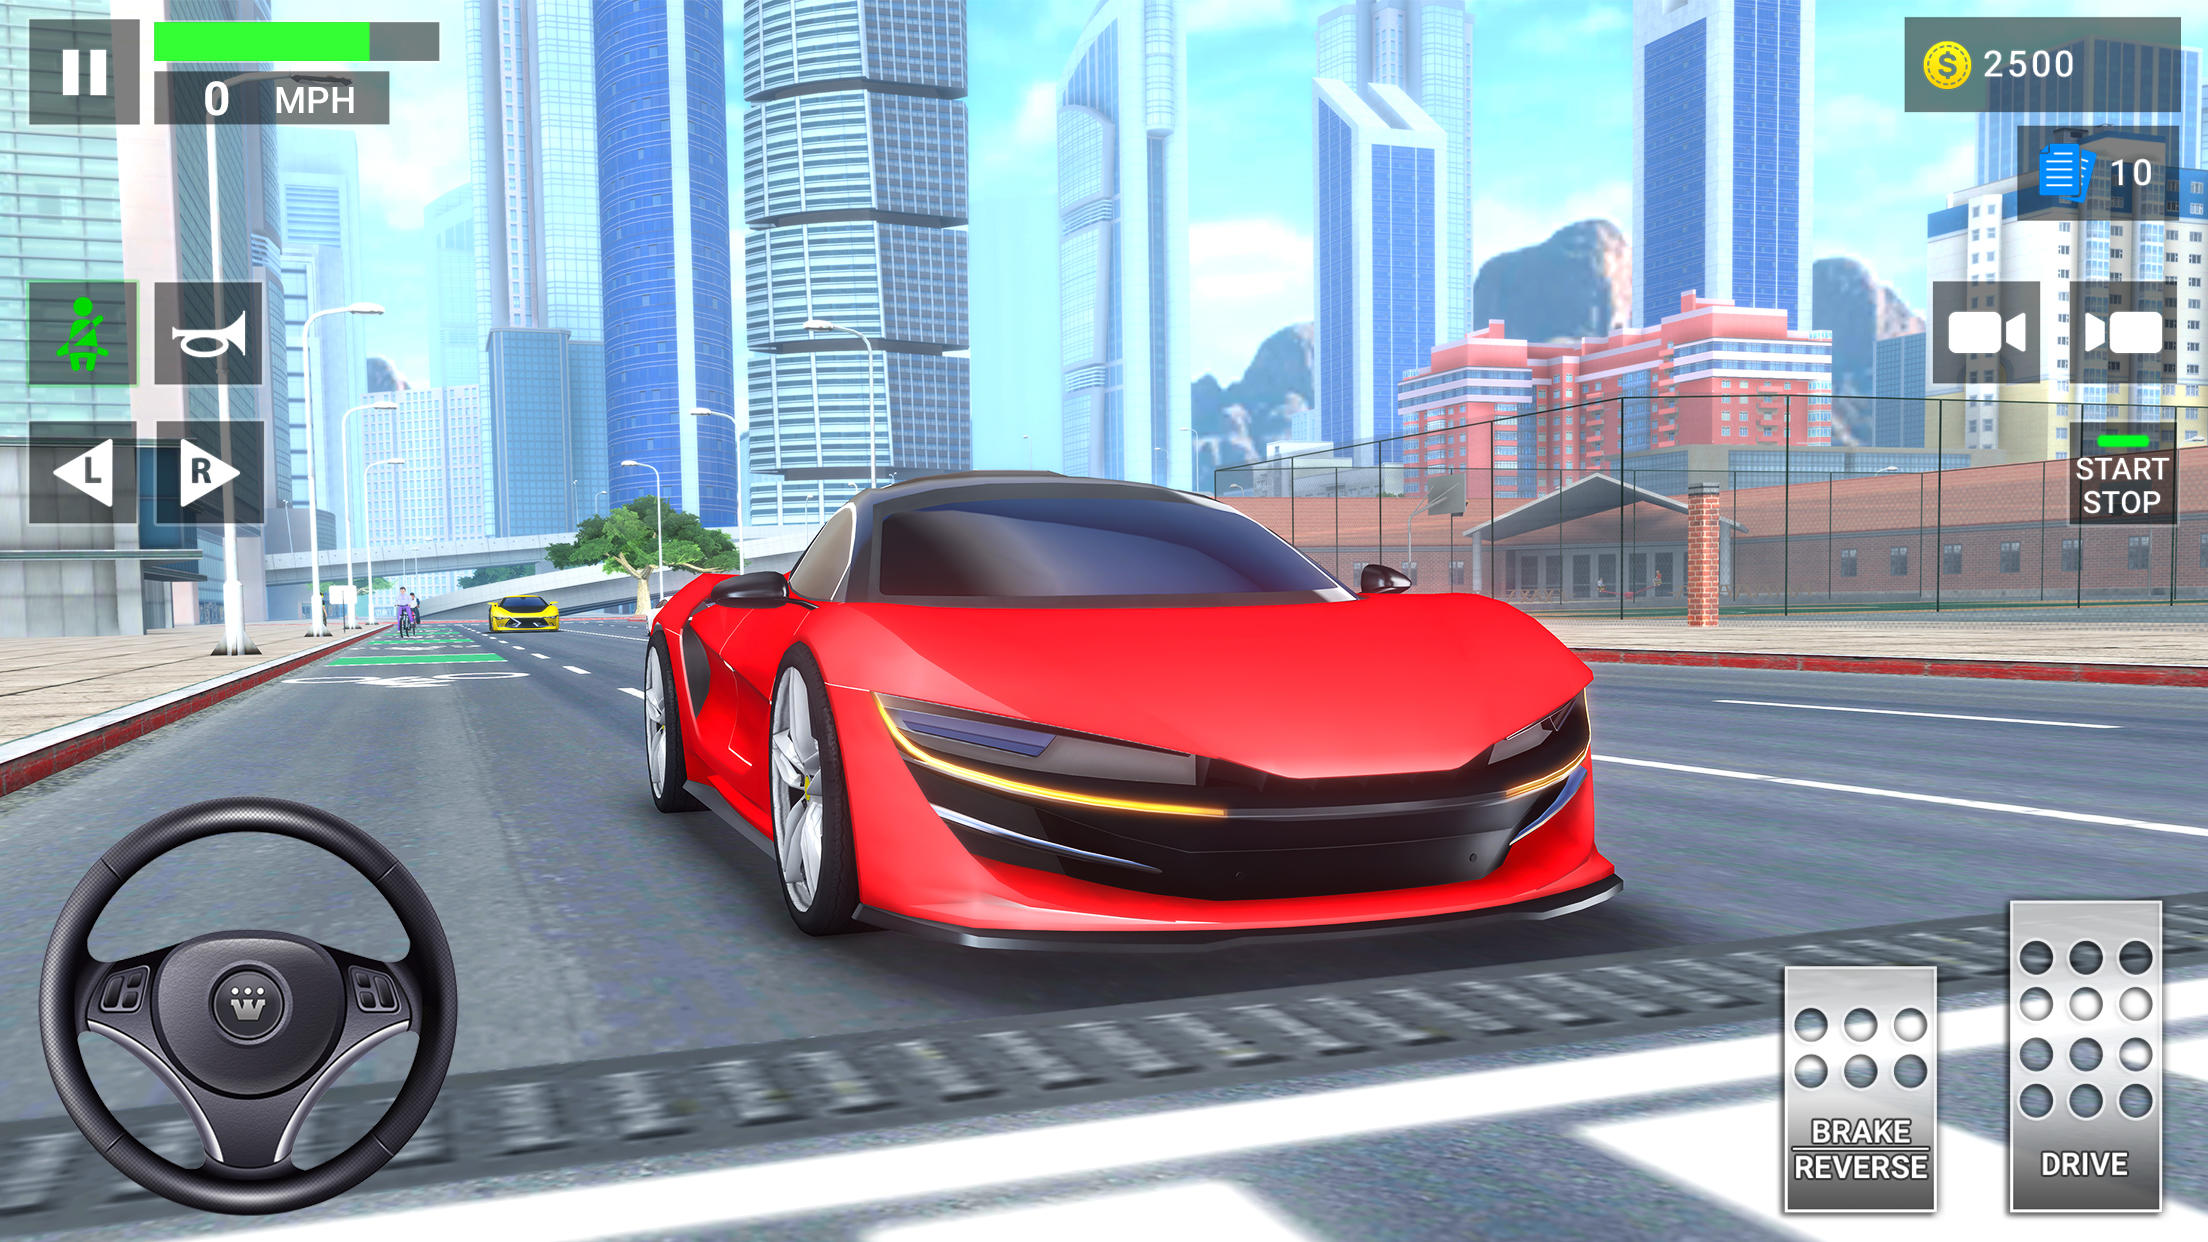 Screenshot 1 of Học viện lái xe 2 Trò chơi ô tô 3.8